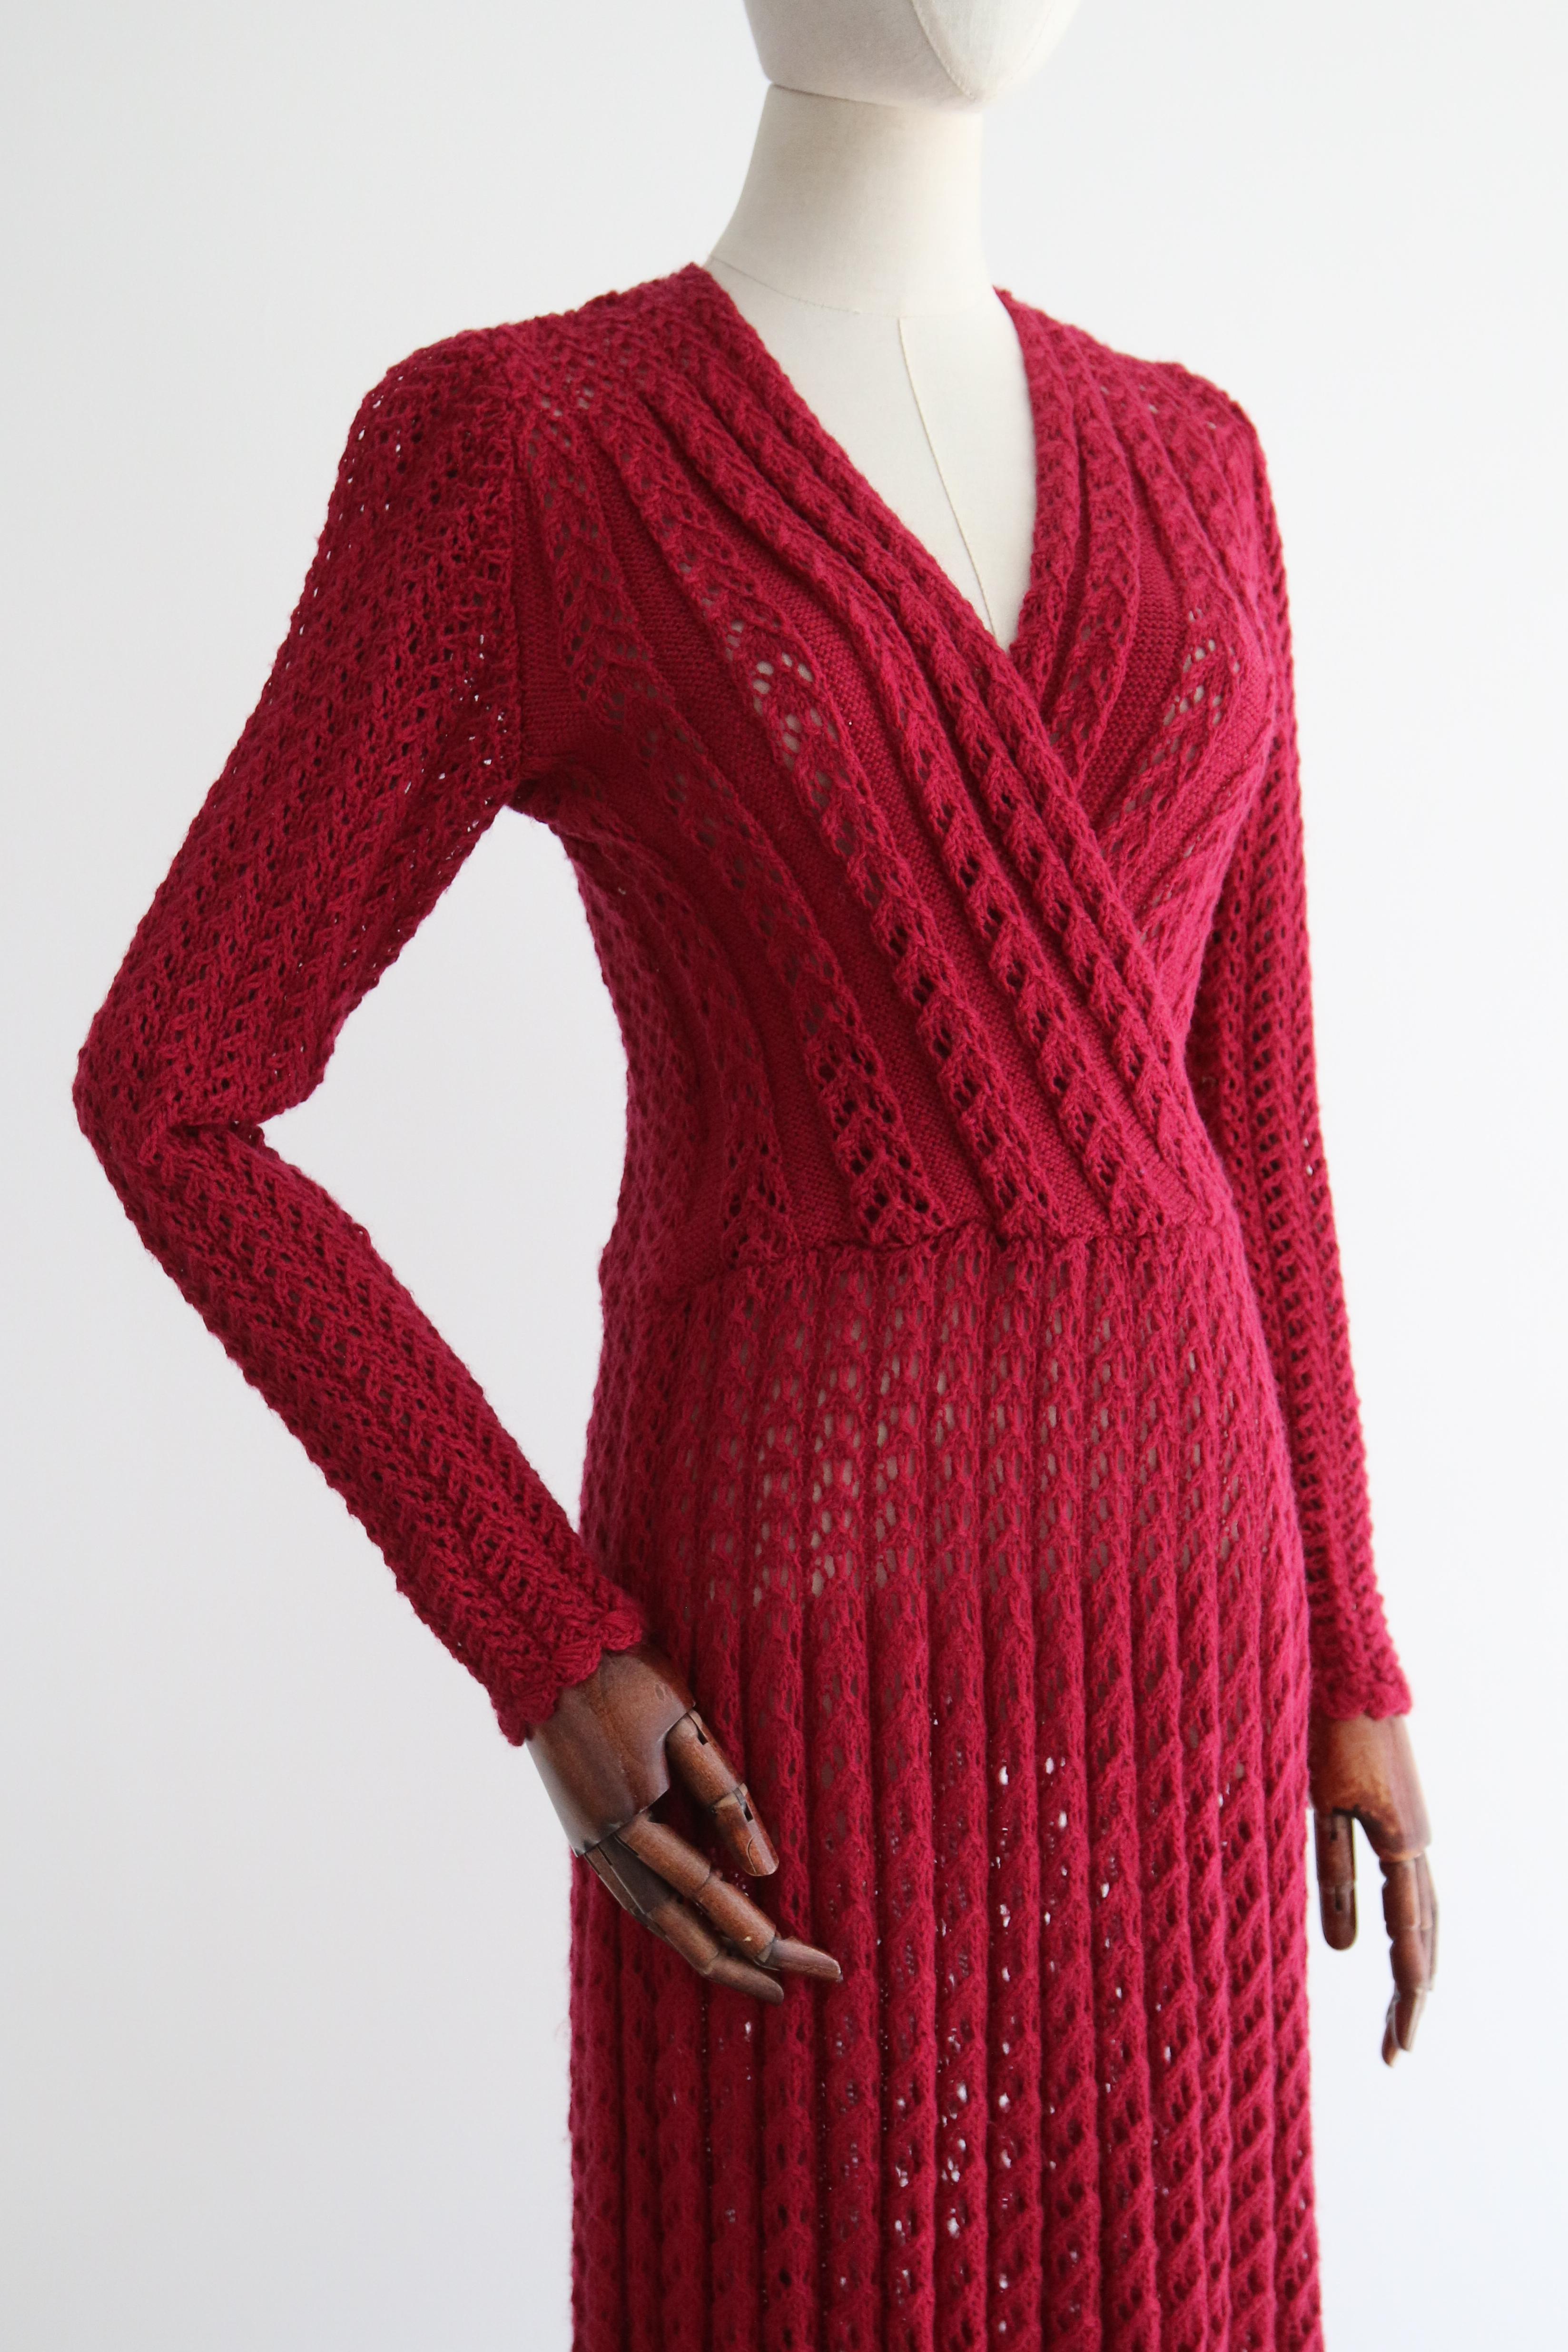 Vintage 1940's Magenta Knitted Dress UK 10-12 US 6-8 For Sale 1